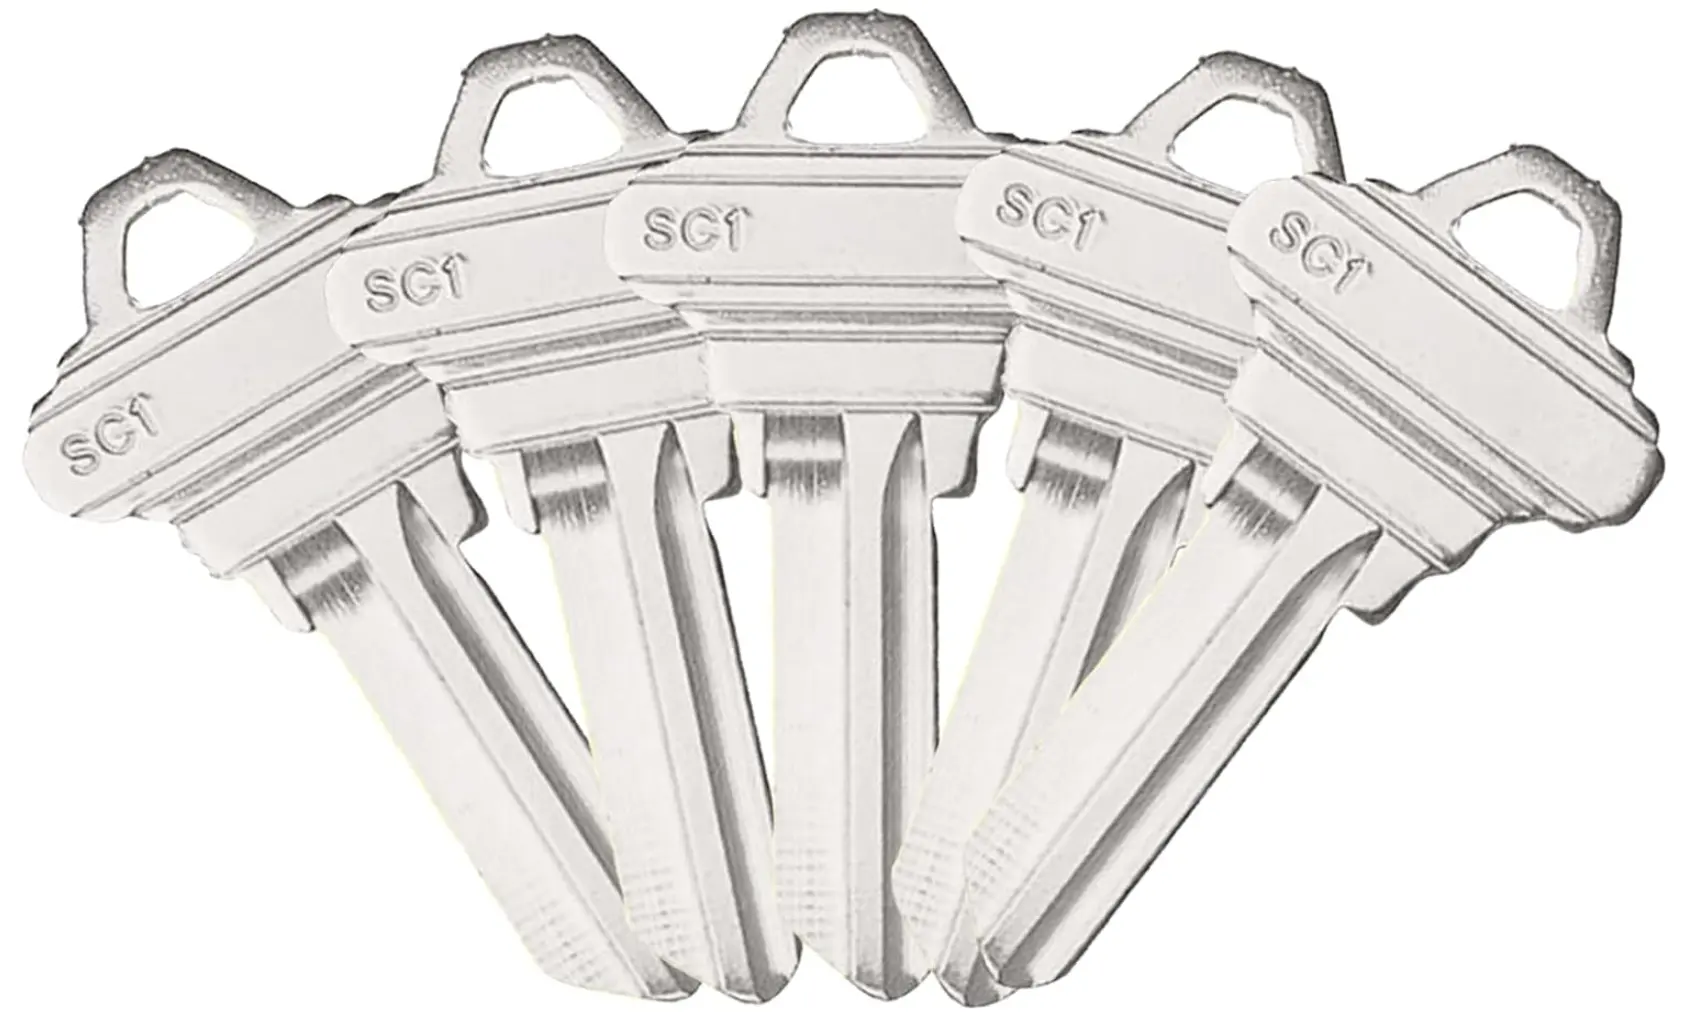 SC1 einfacher Schlüssel Unbotscheine unverschnittene Kupferstrukturen einfache Schlüssel zum Duplizieren zum Schneiden